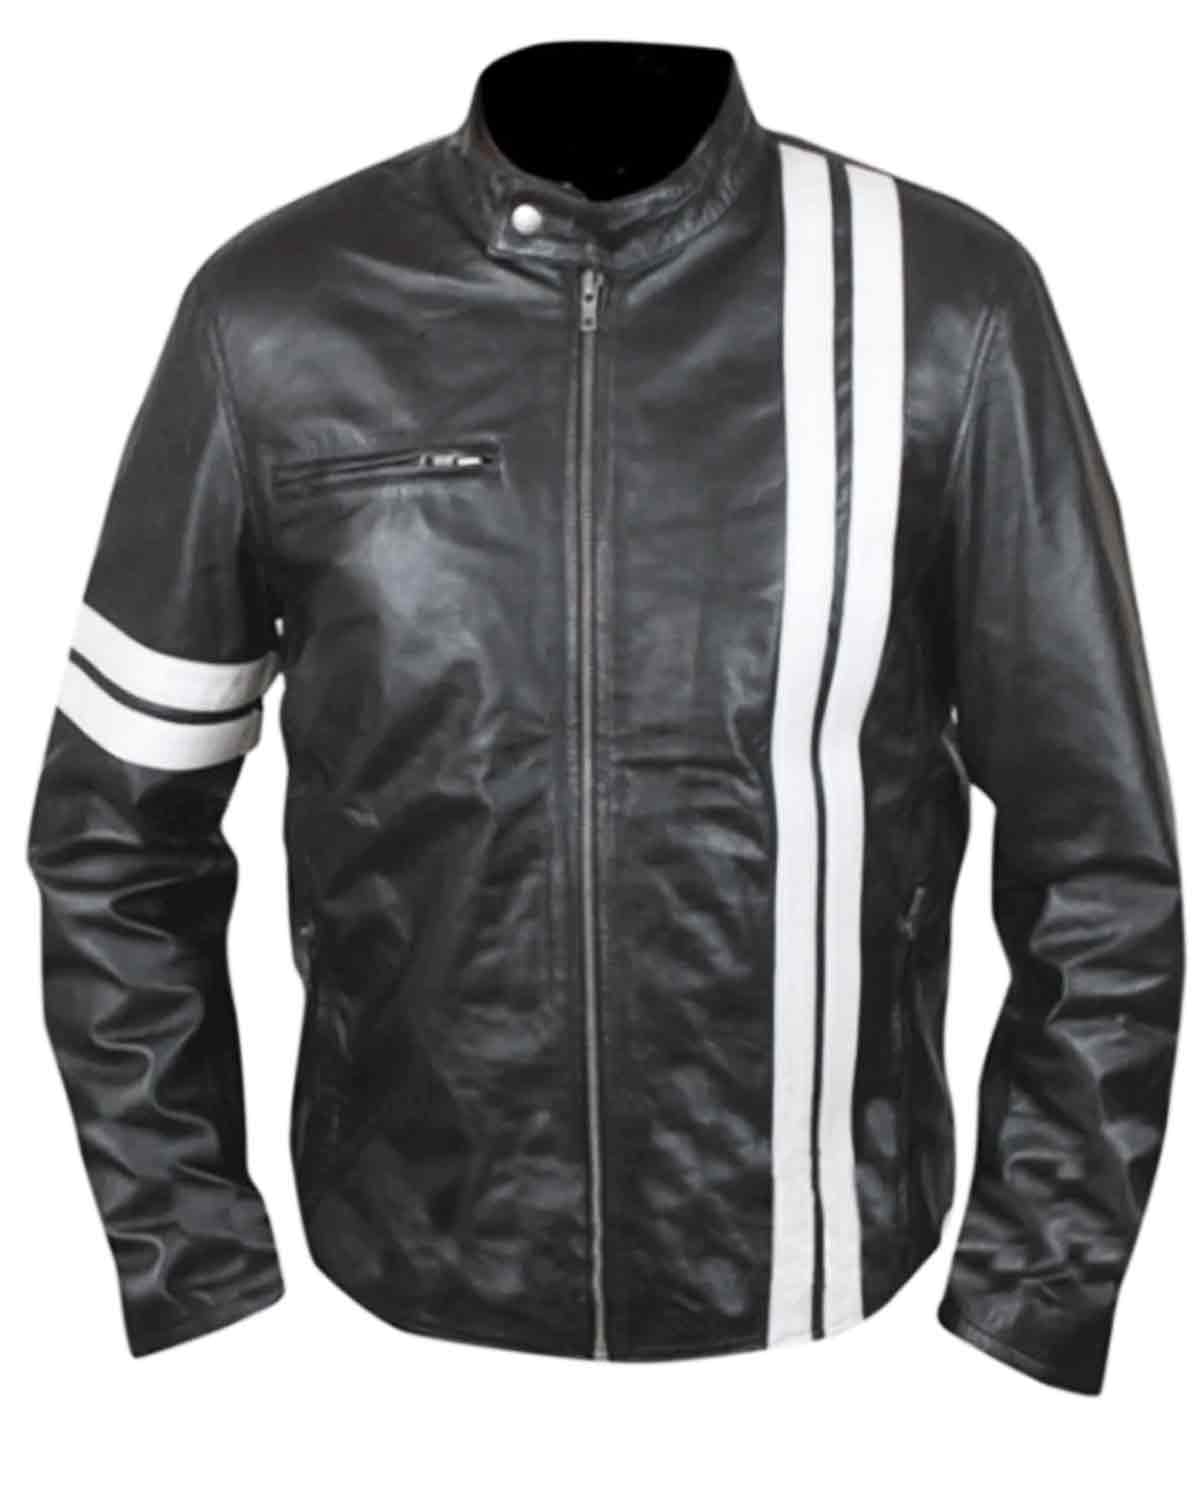 Elite John Tanner Driver San Francisco Black Biker Leather Jacket